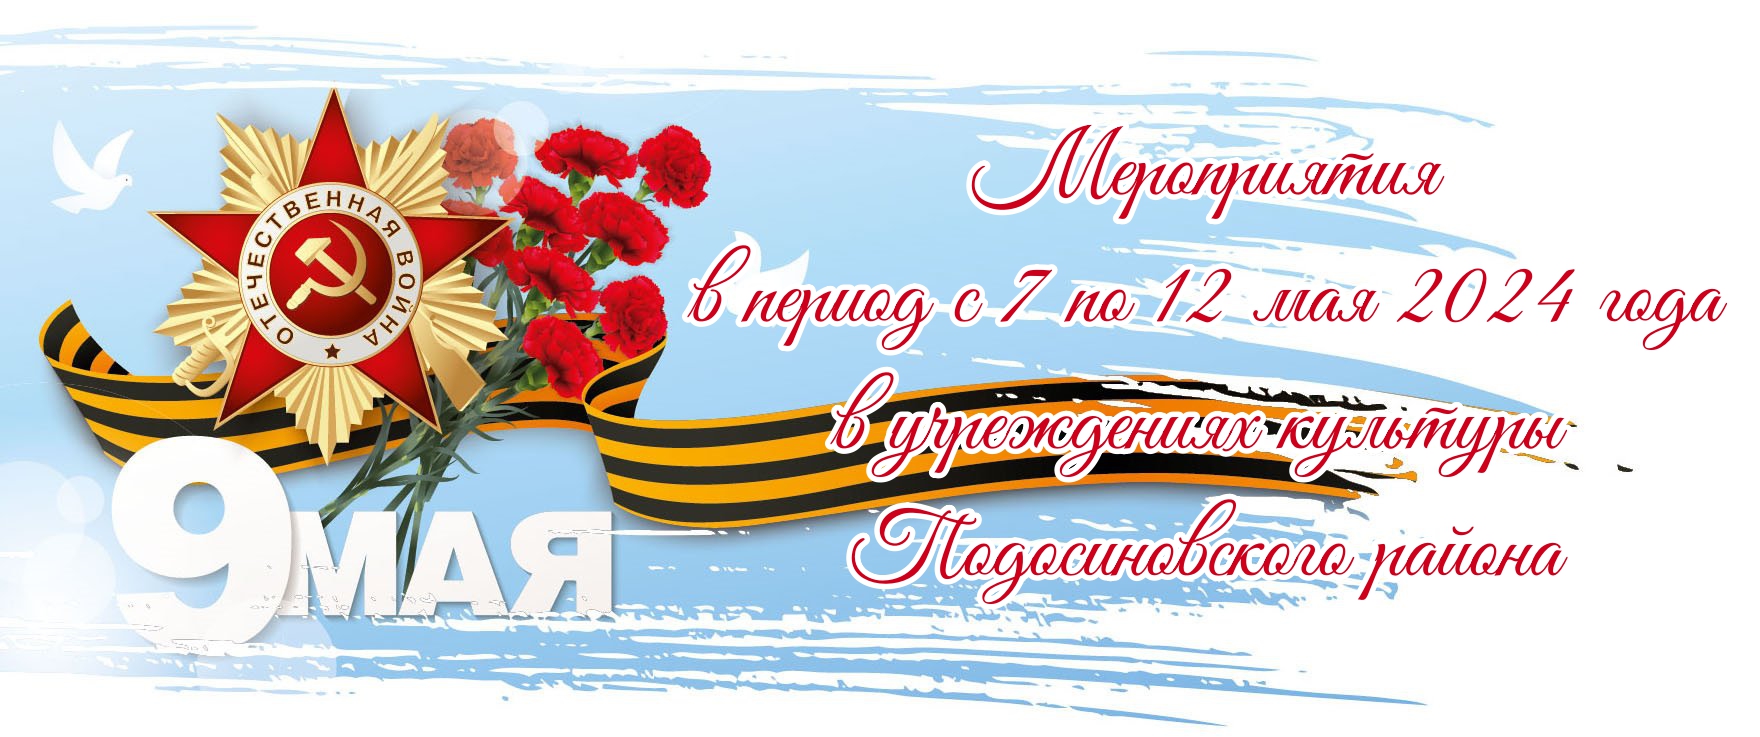 Мероприятия в период с 7 по 12 мая 2024 года  в учреждениях культуры Подосиновского района.